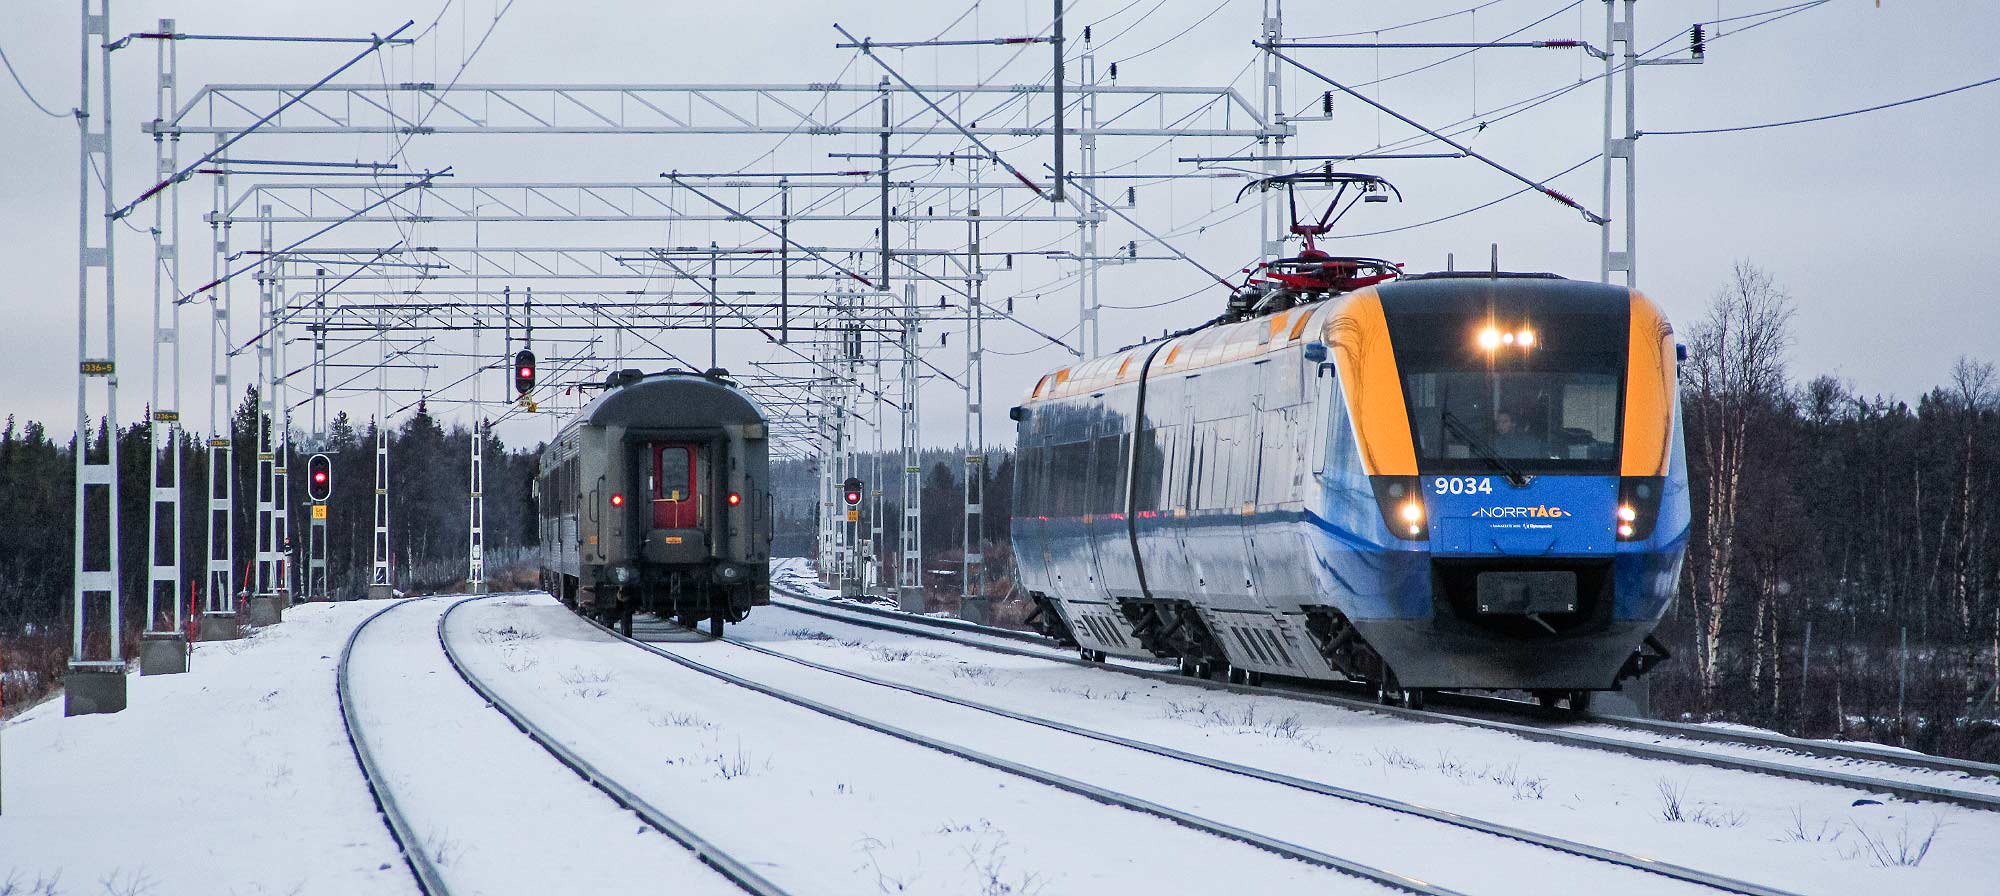 Bild: Tåg 94 mot Narvik möter tåg 7153 mot Luleå i Linaälv 2018